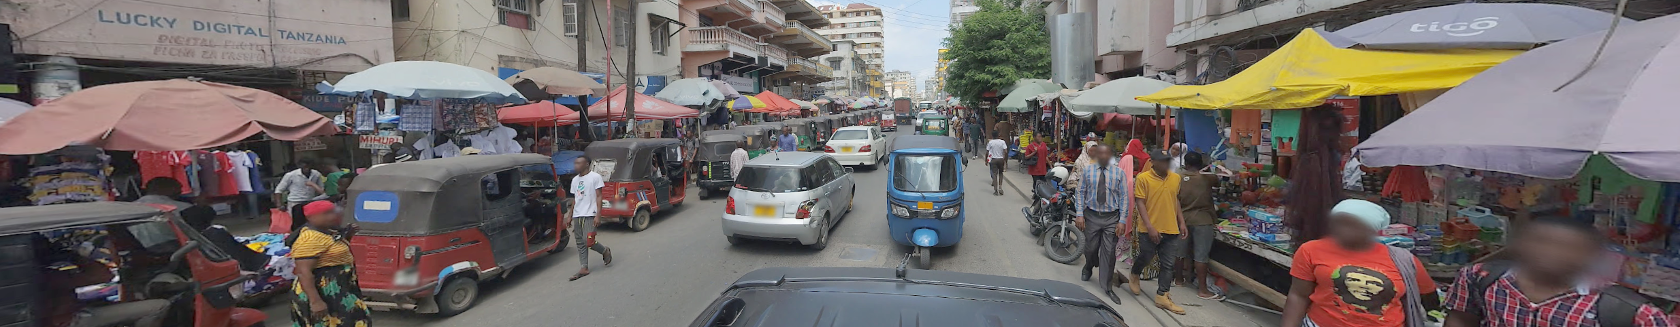 Google Street View contribue à autonomiser les communautés de Zanzibar via l'outil National Global Tour